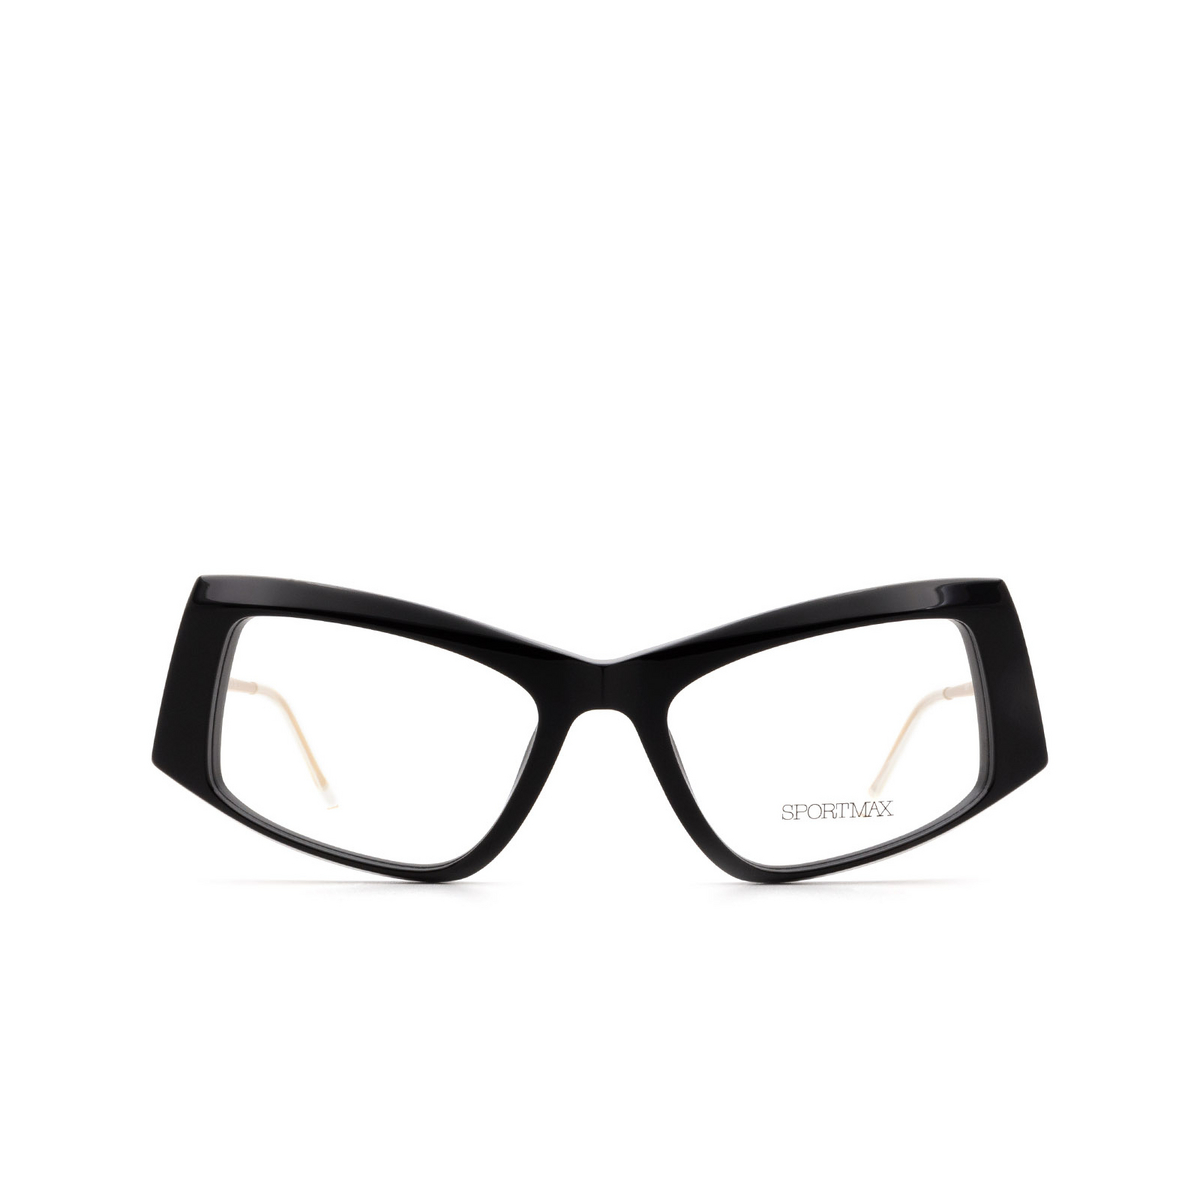 Sportmax® Square Eyeglasses: SM5005 color Black 001 - front view.